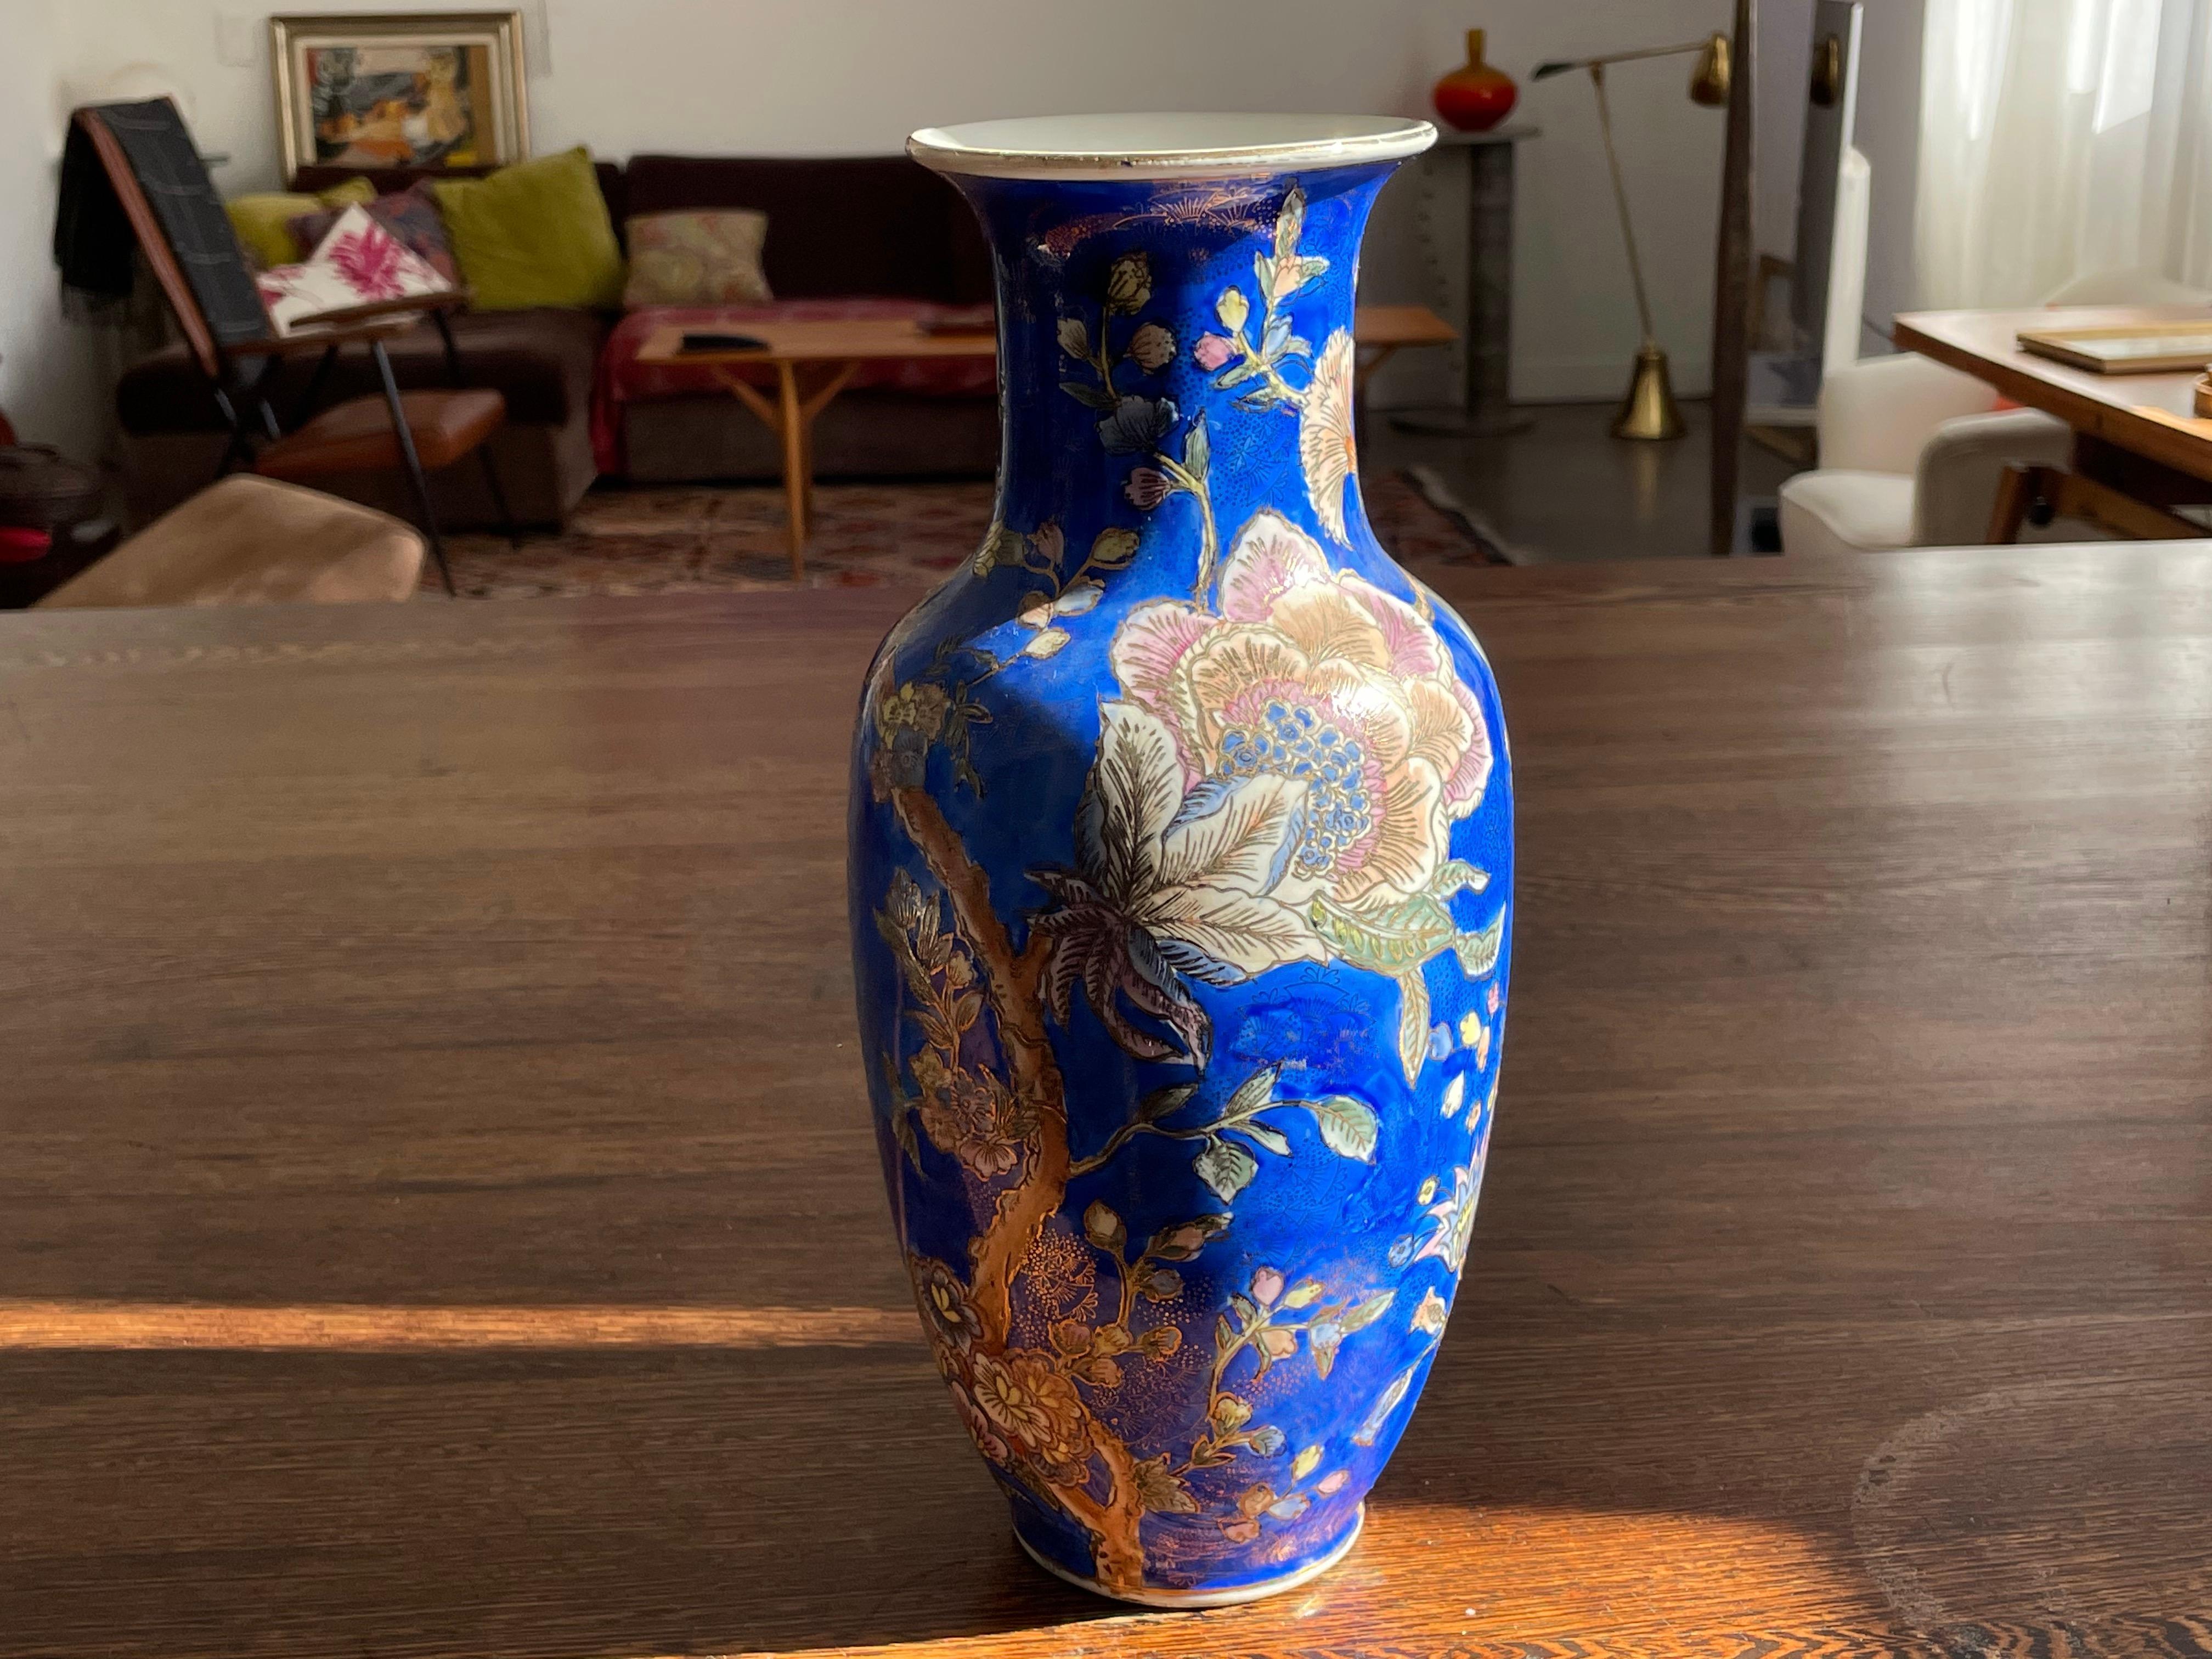 Un vase en porcelaine chinoise vintage, probablement des années 1960, en émail bleu décoré de belles fleurs et de délicats détails peints à la main en or. 
Signé.
  
Nous sommes un espace d'exposition et une destination en ligne créés par le